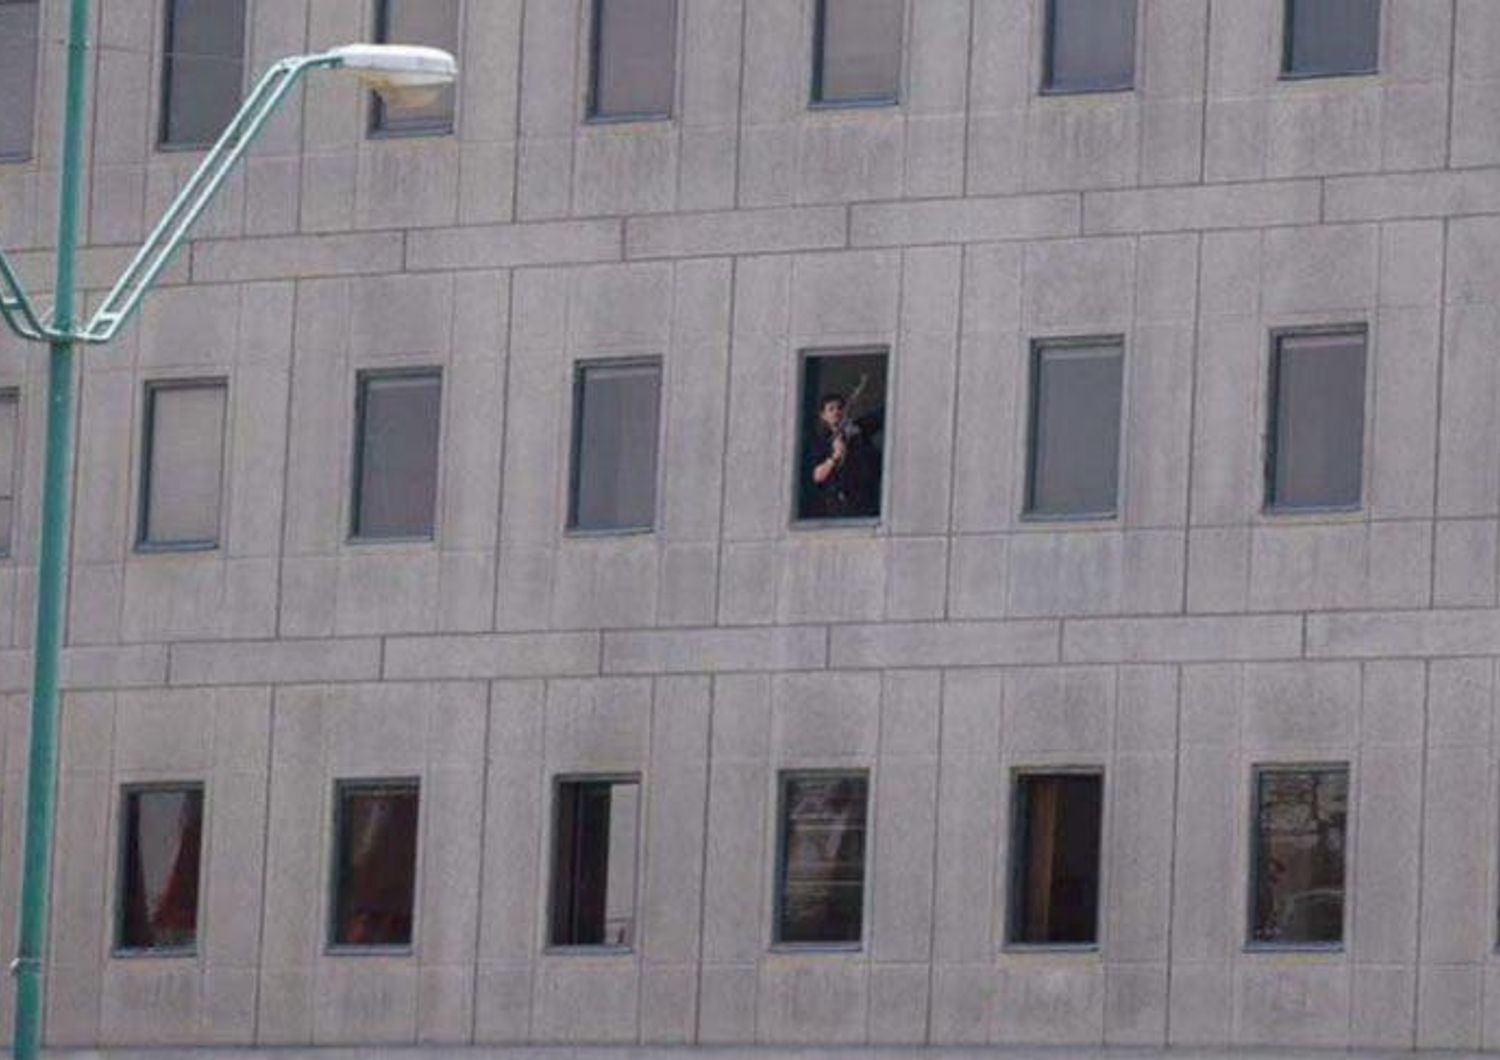 &nbsp;Iran attacco terroristico al parlamento, uno degli assalitori che spara dalla finestra (Tasnim News Agency)